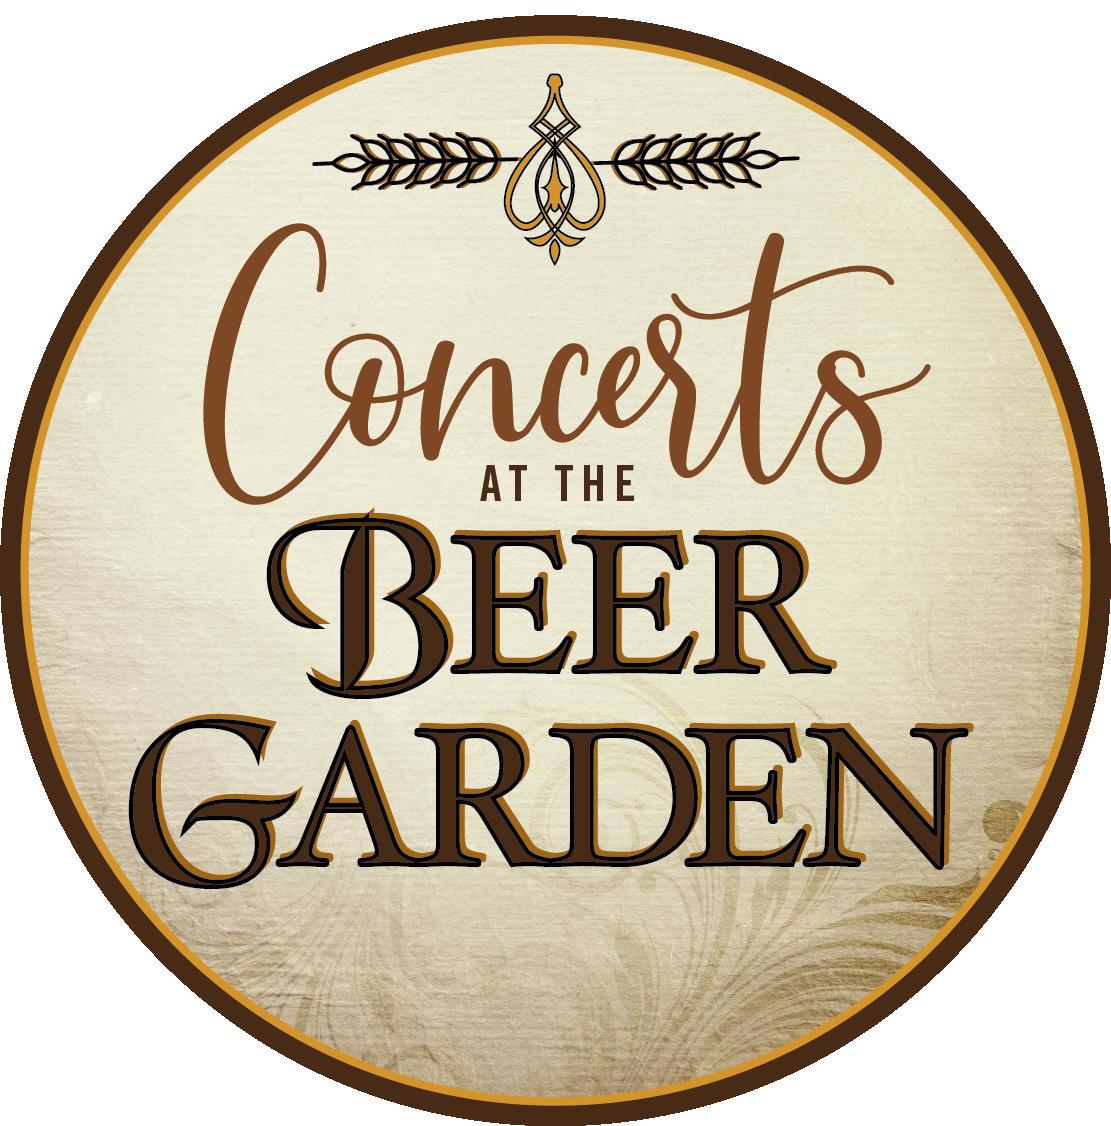 Concerts at the Beer Garden in Menomonee Falls